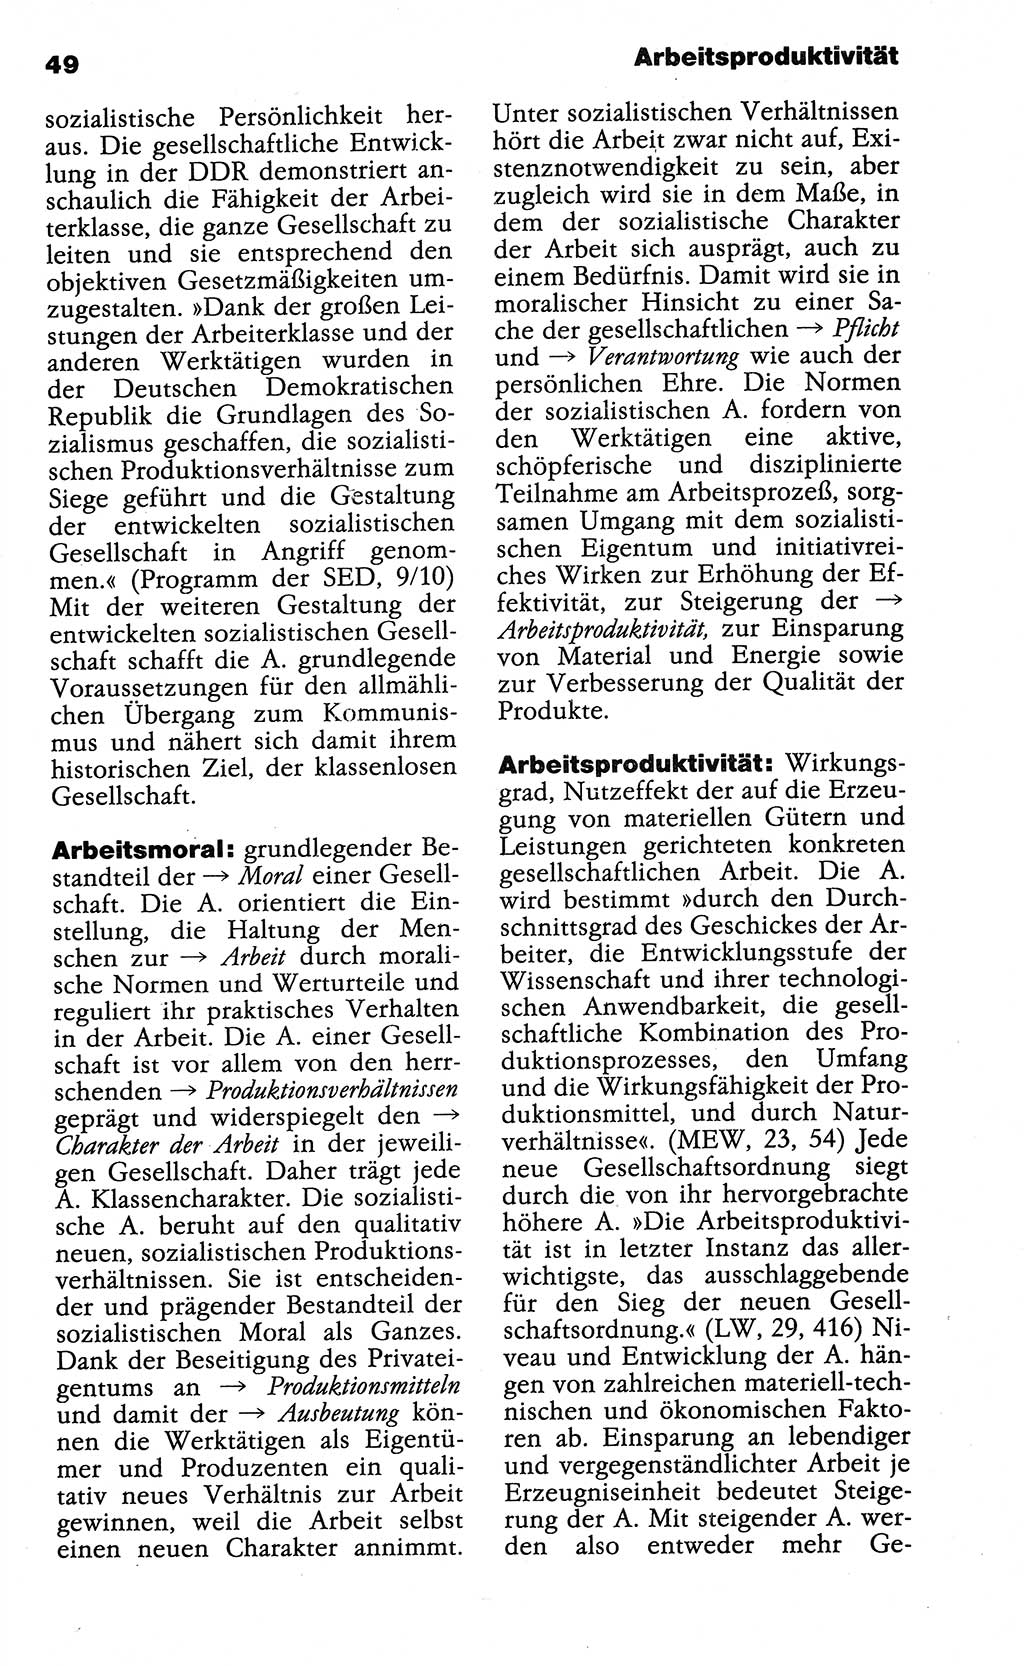 Wörterbuch der marxistisch-leninistischen Philosophie [Deutsche Demokratische Republik (DDR)] 1985, Seite 49 (Wb. ML Phil. DDR 1985, S. 49)